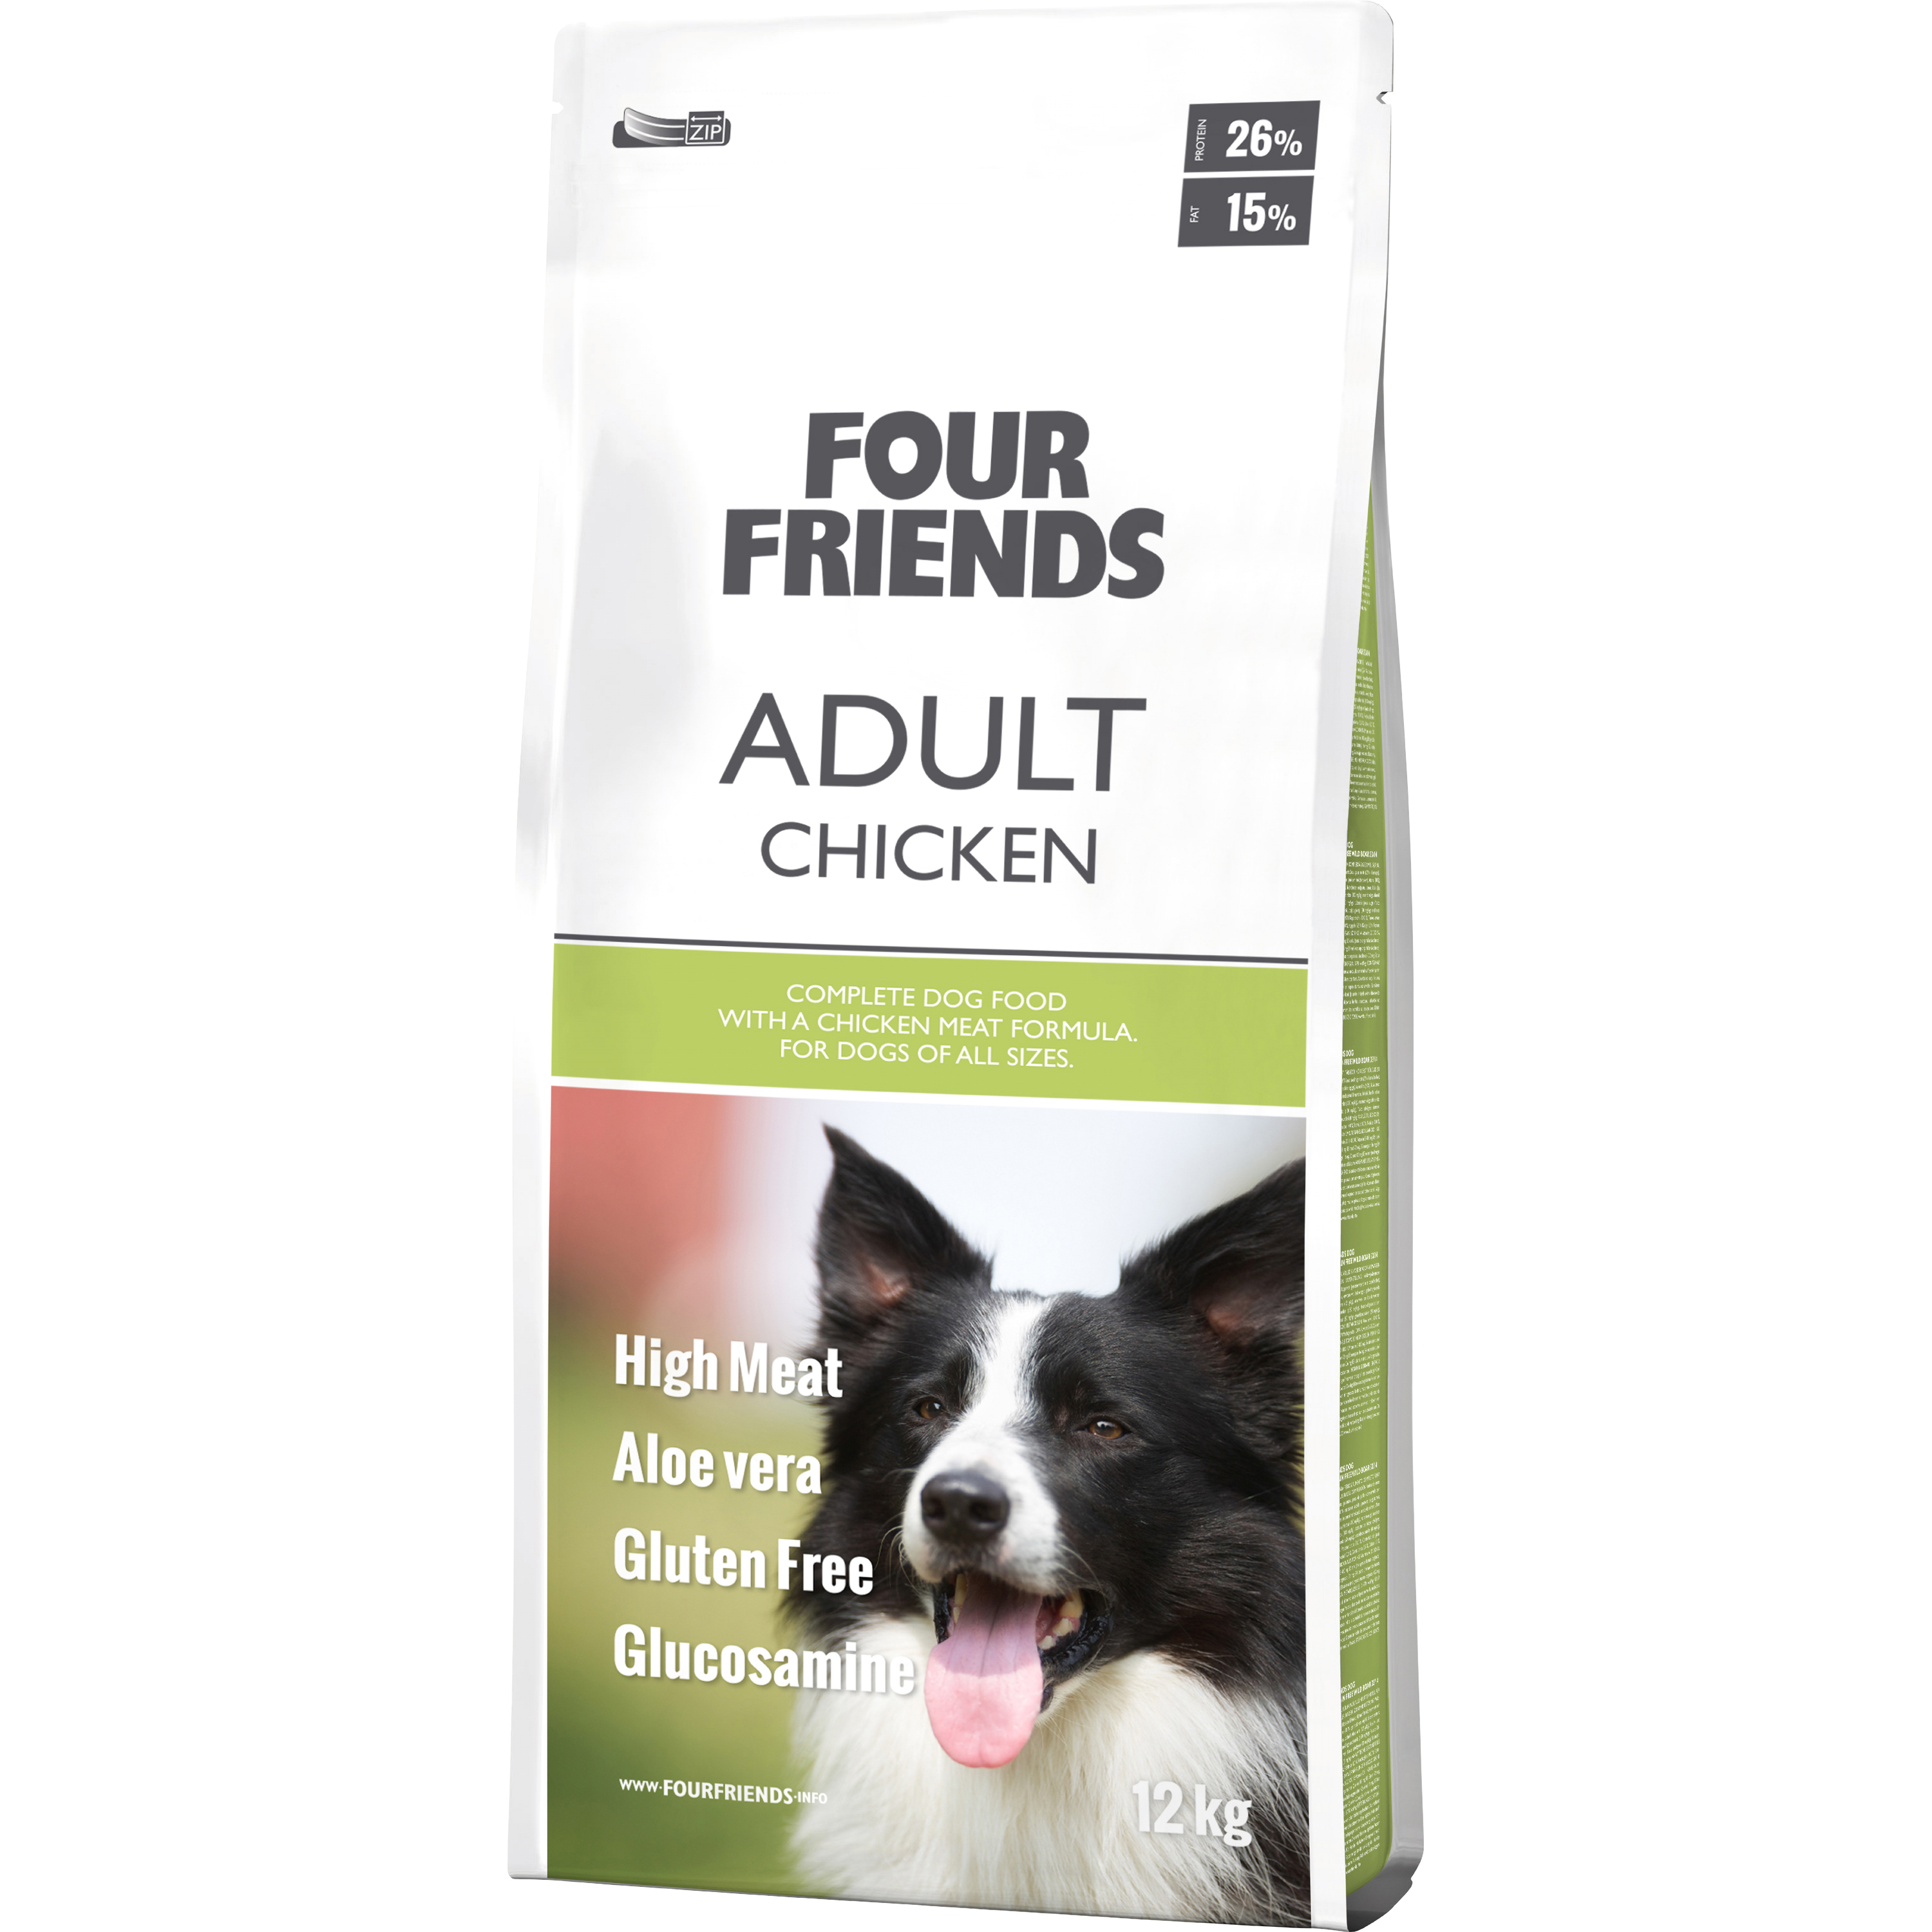 Hundfoder Four Friends Adult 12 kg